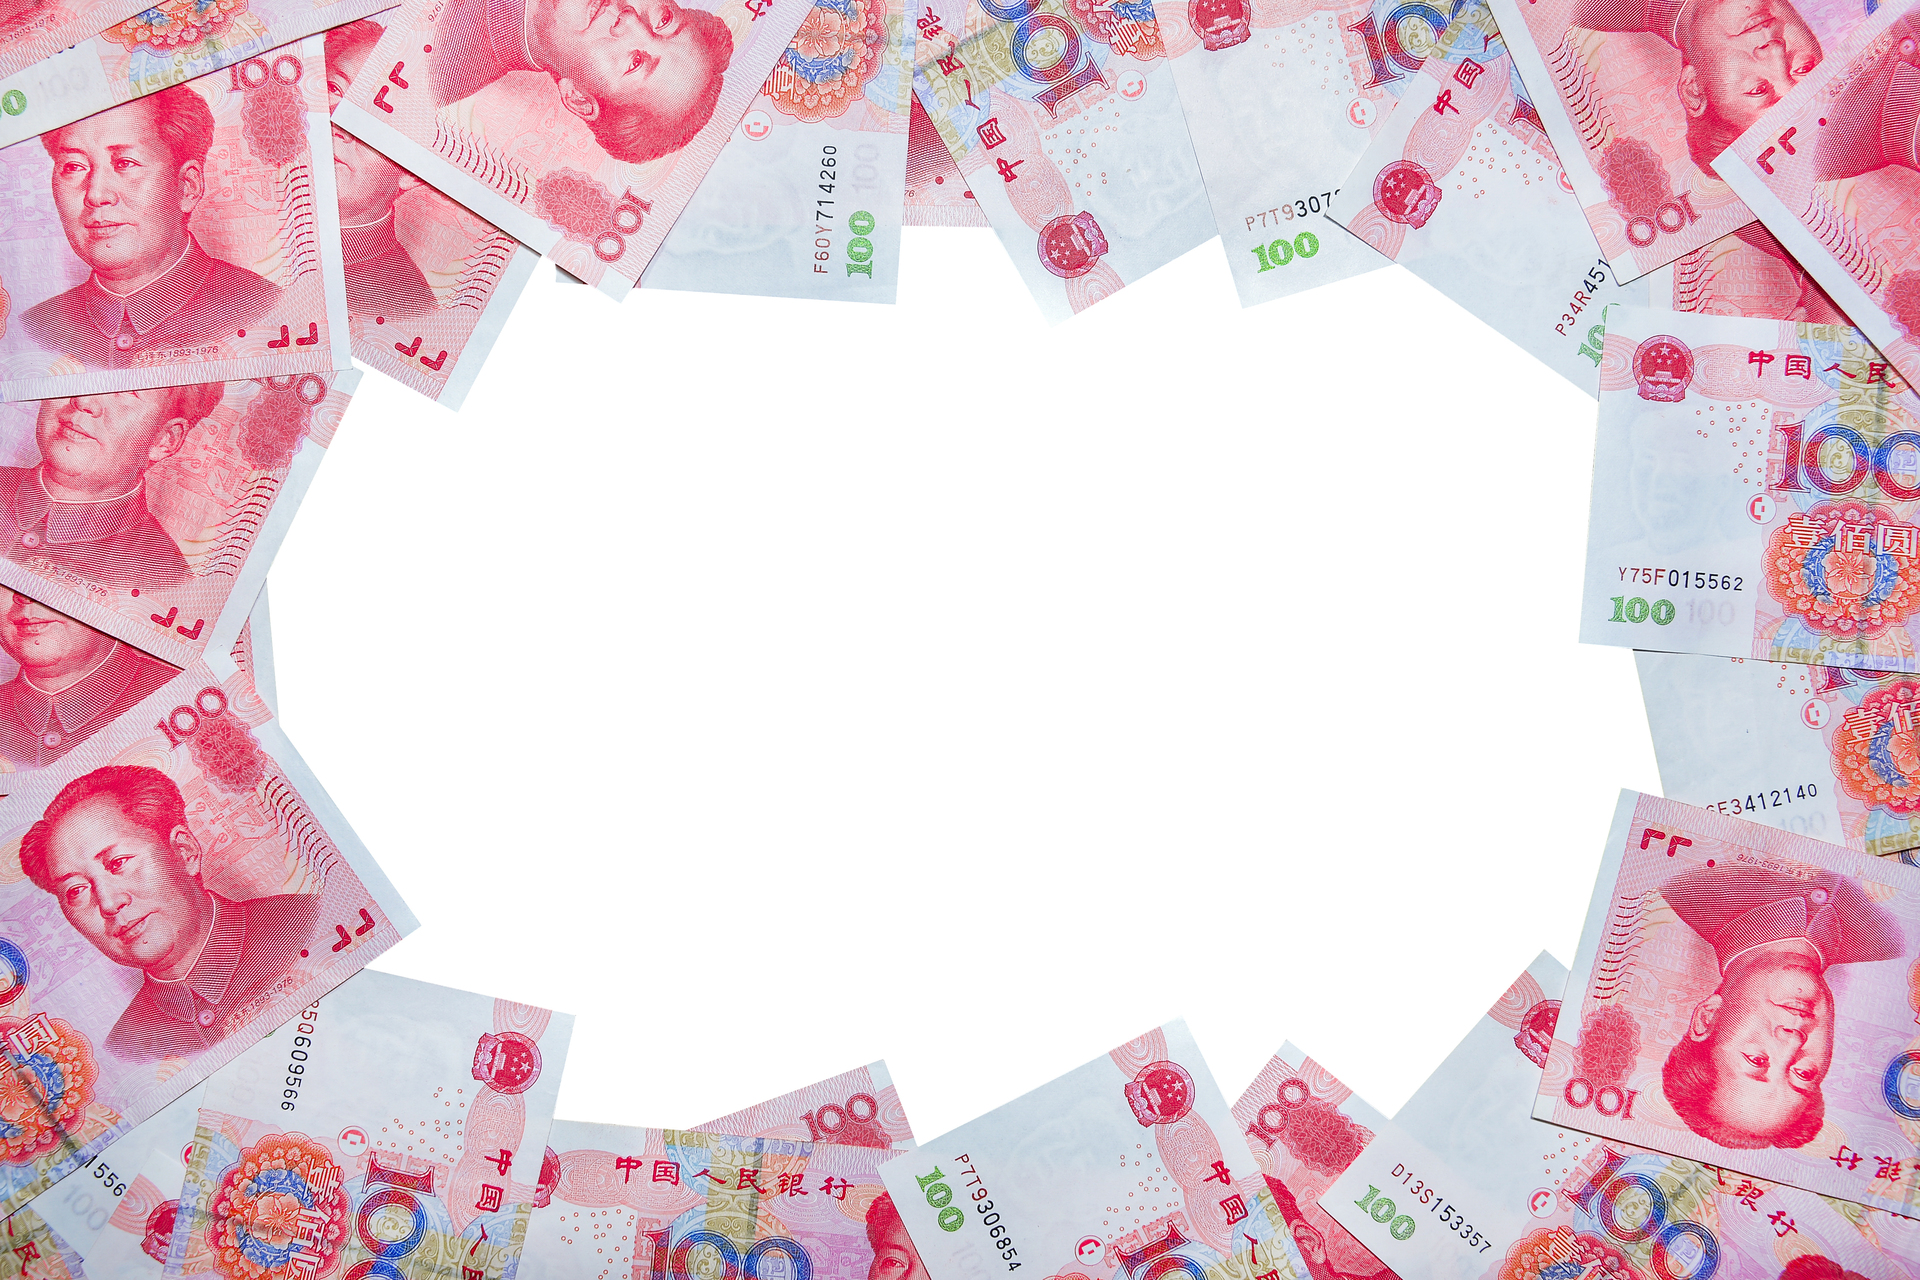 Chińskie banknoty ułożone w okrąg na białym tle